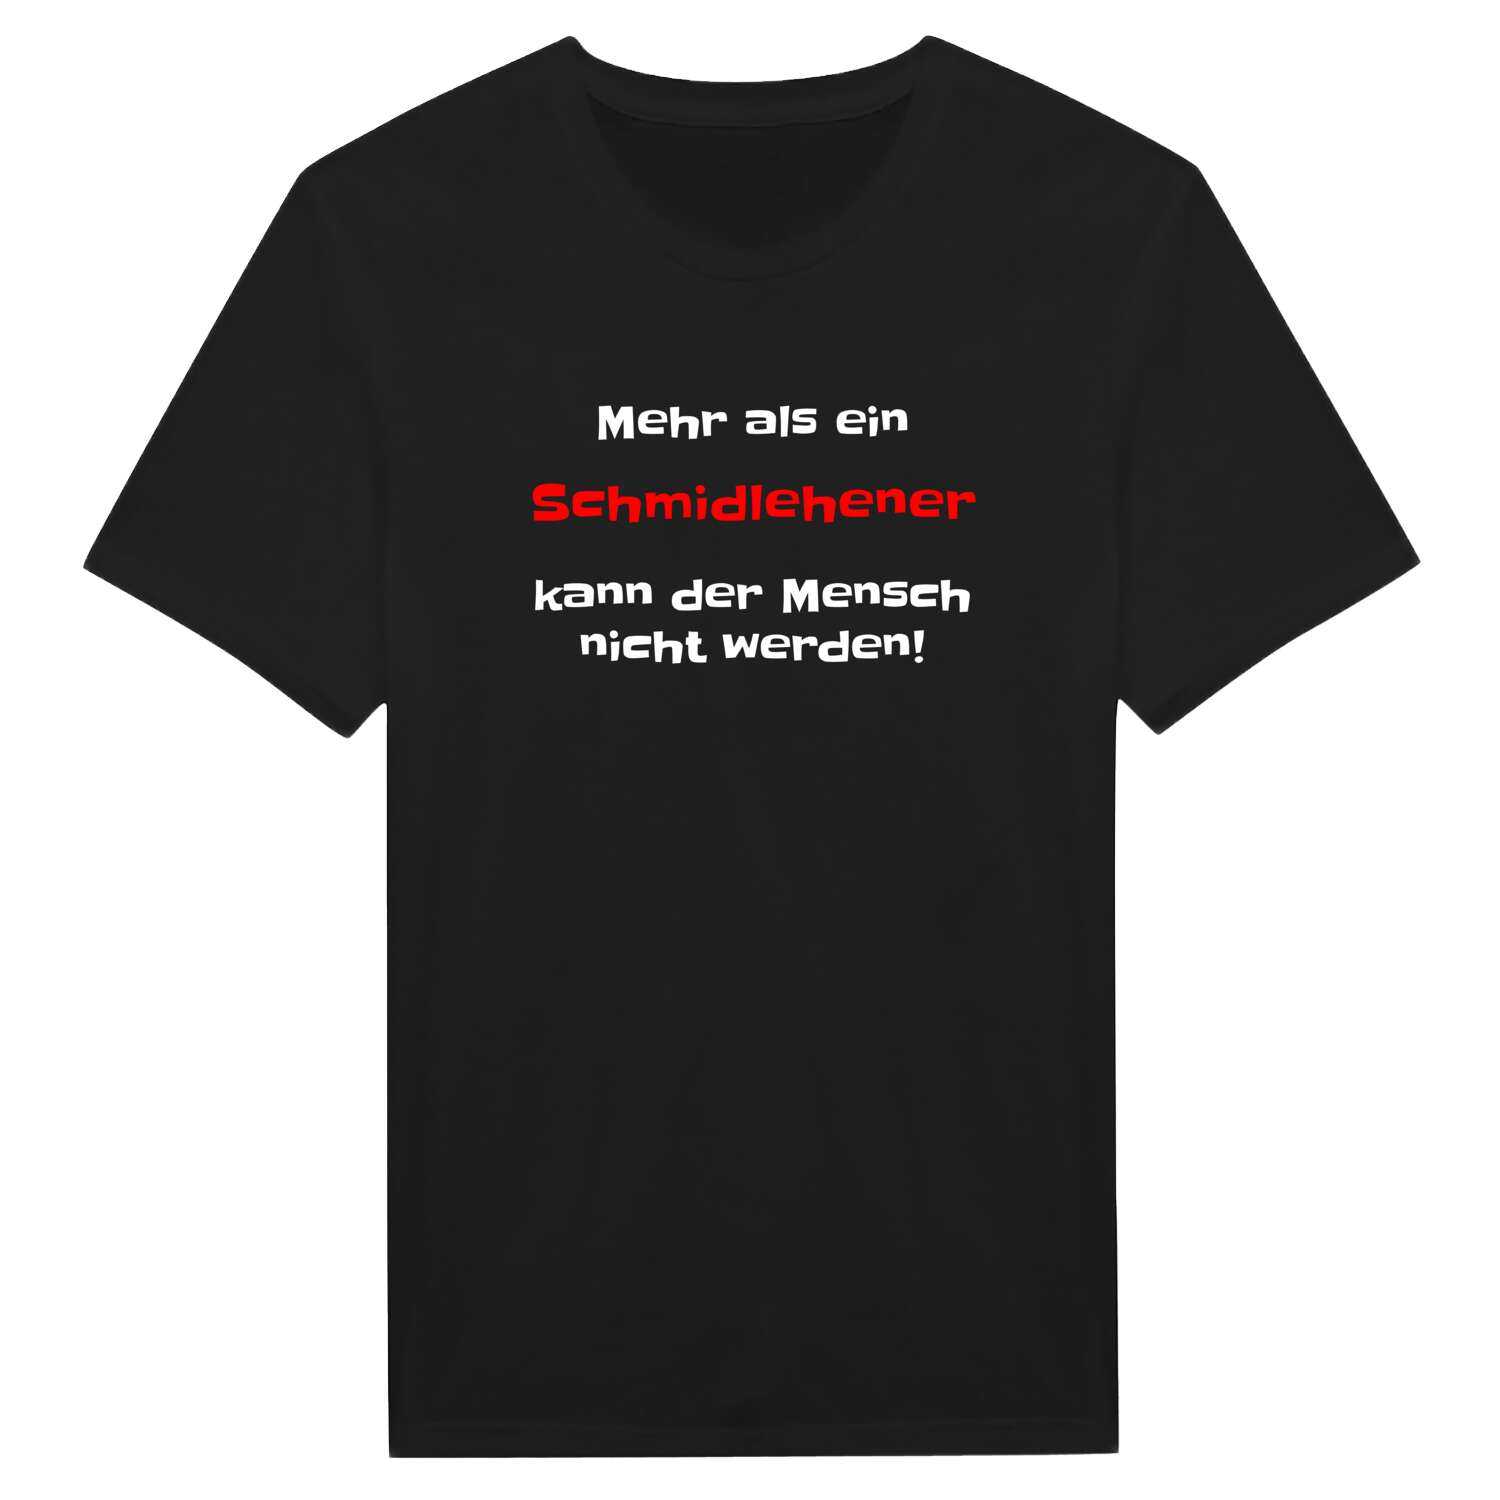 Schmidlehen T-Shirt »Mehr als ein«